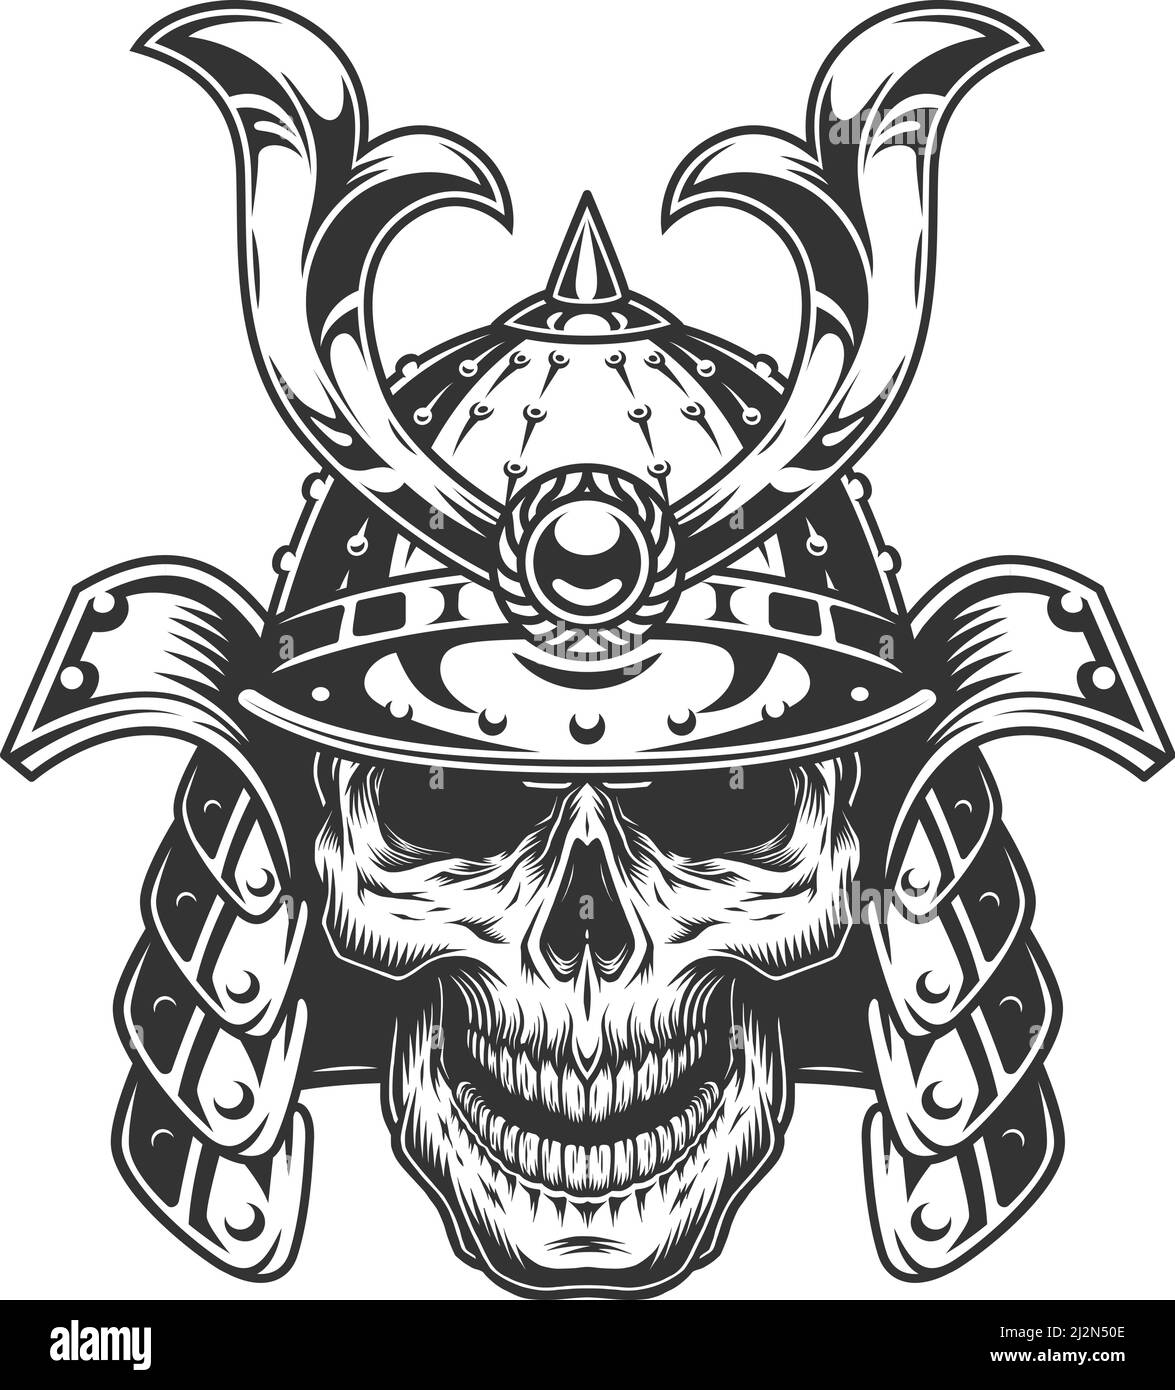 Skull in samurai helmet. Vector vintage illustration Stock Vector